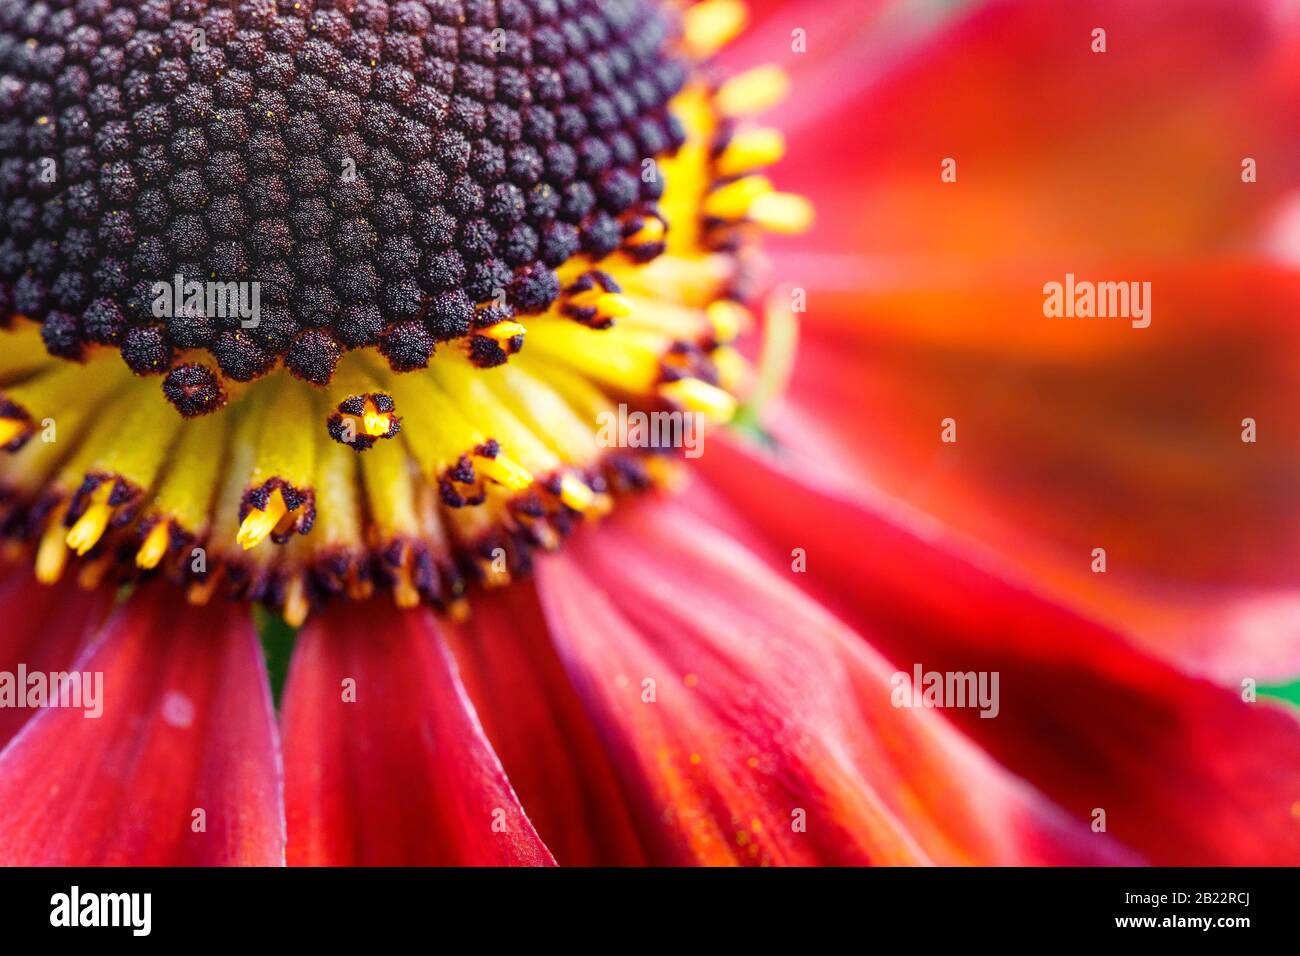 common sneezeweed flower Stock Photo